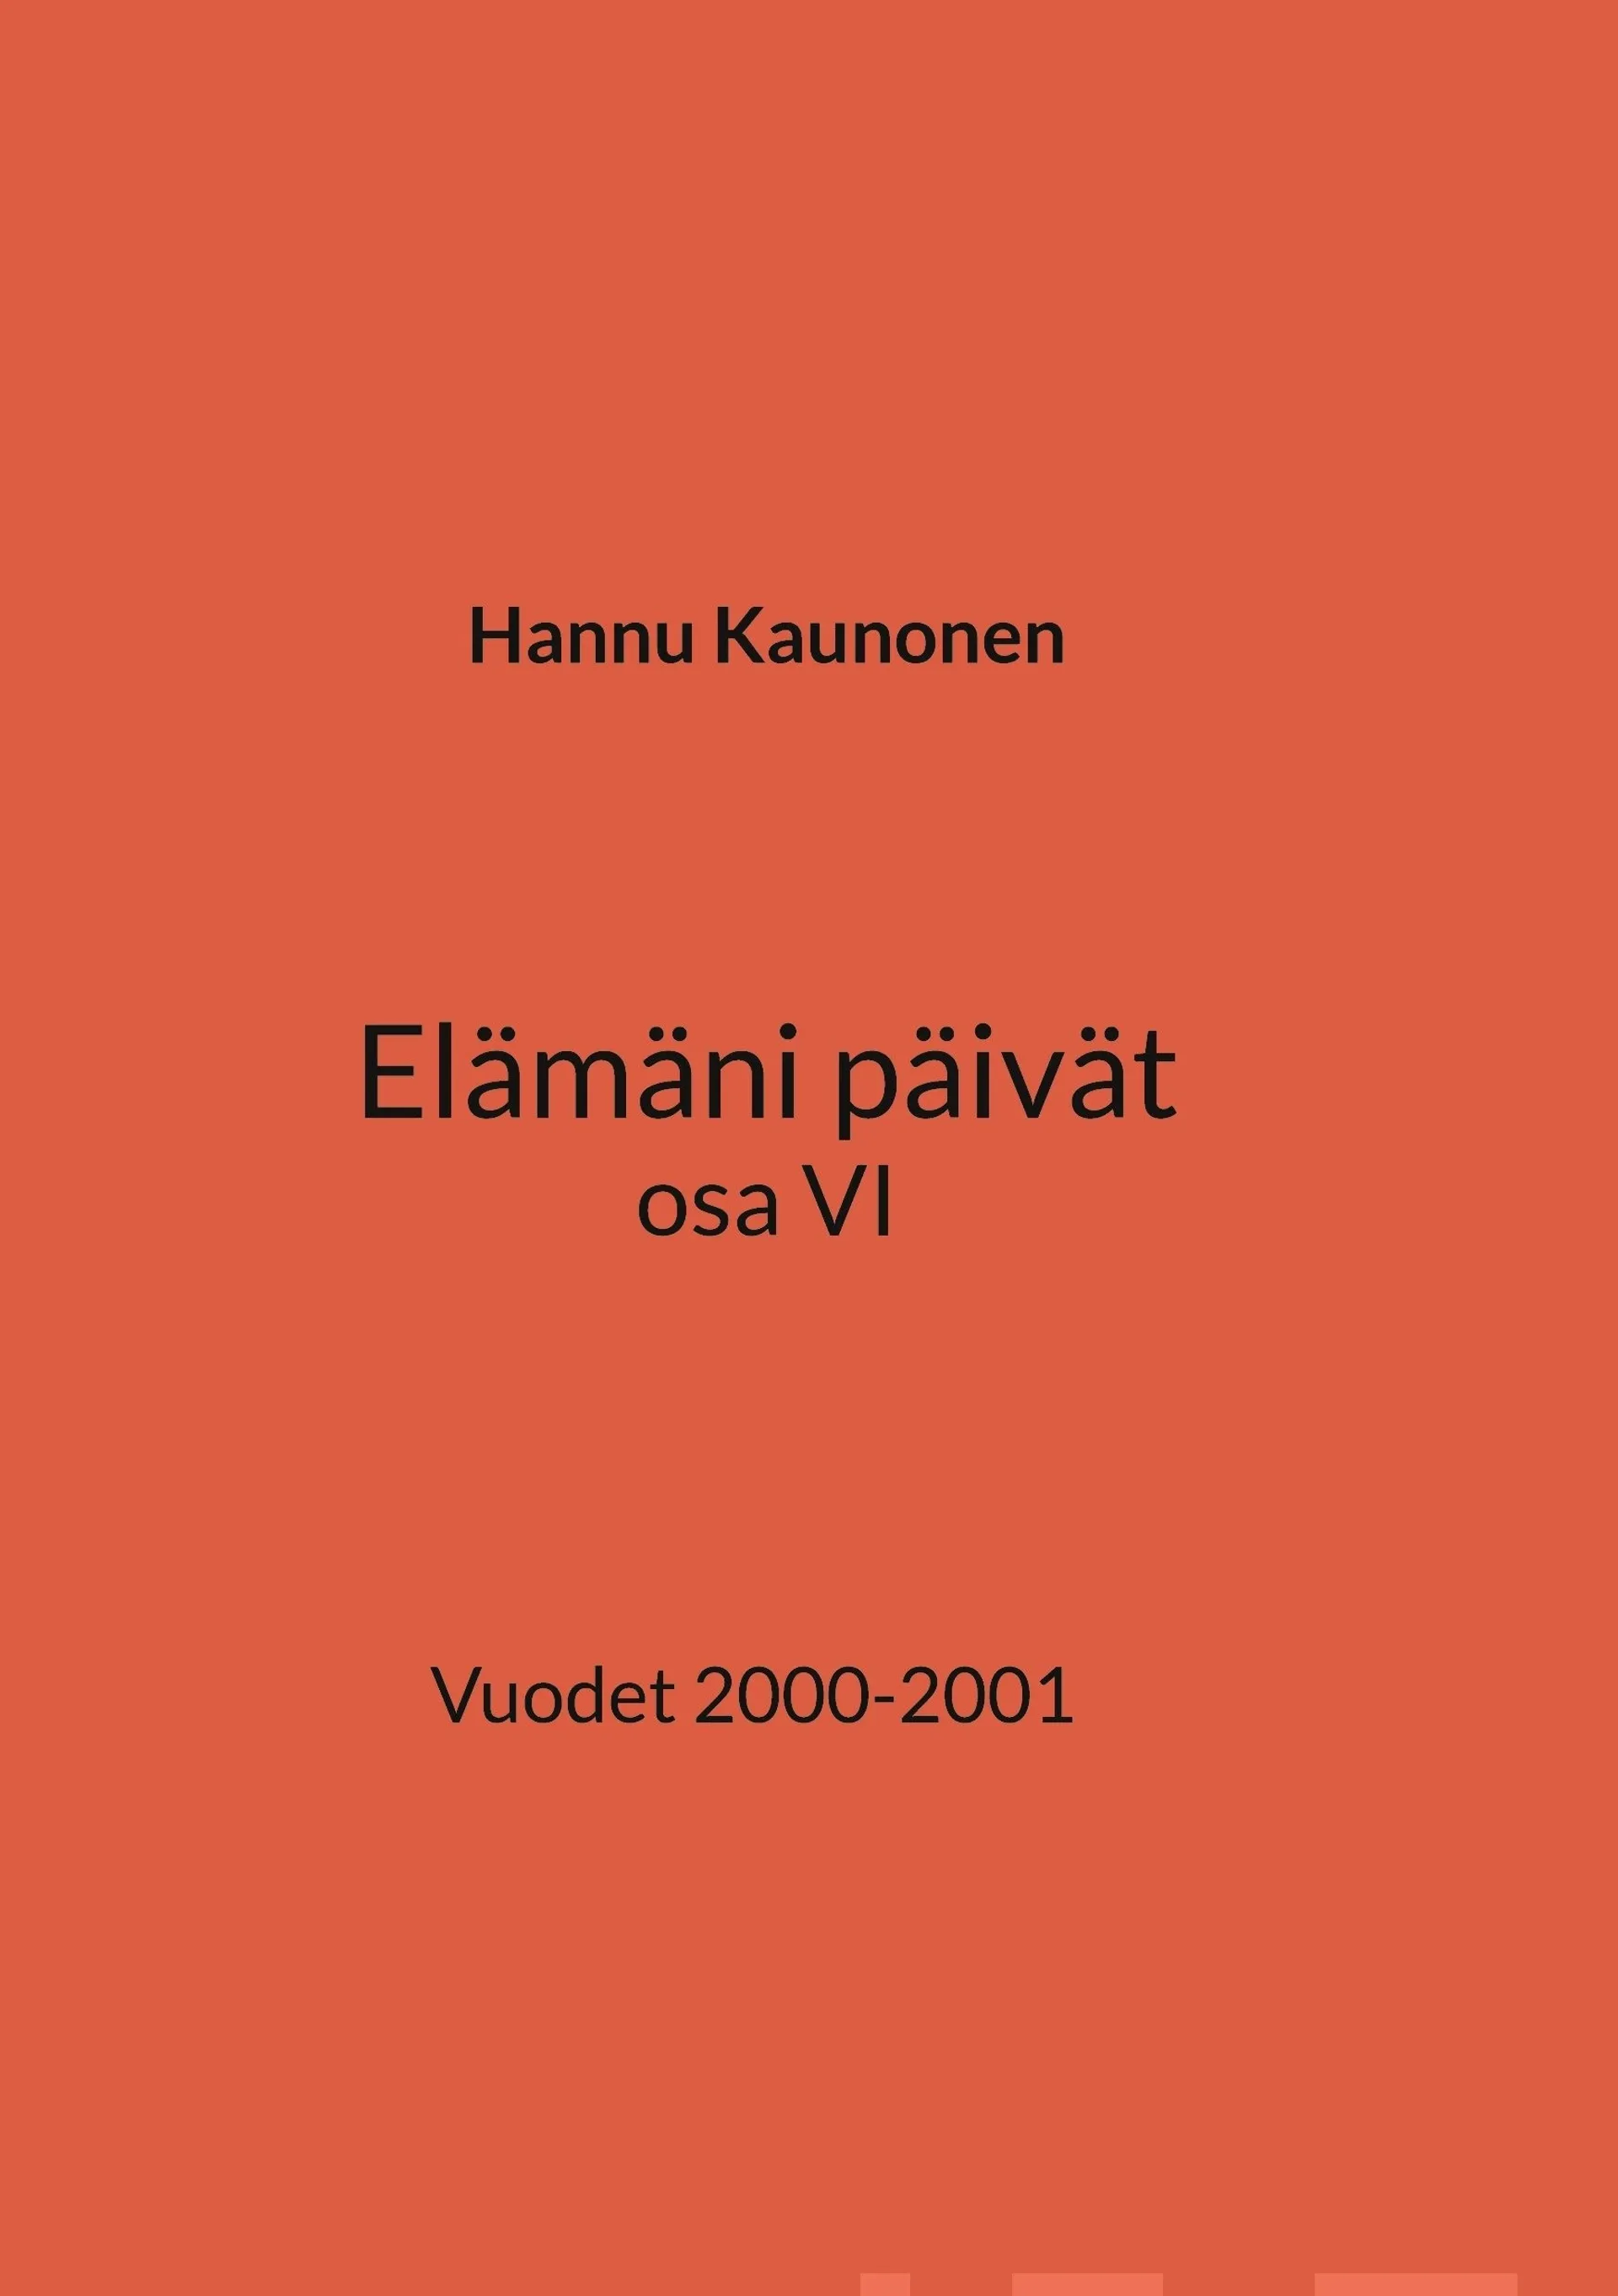 Kaunonen, Elämäni päivät osa VI - Vuodet 2000-2001